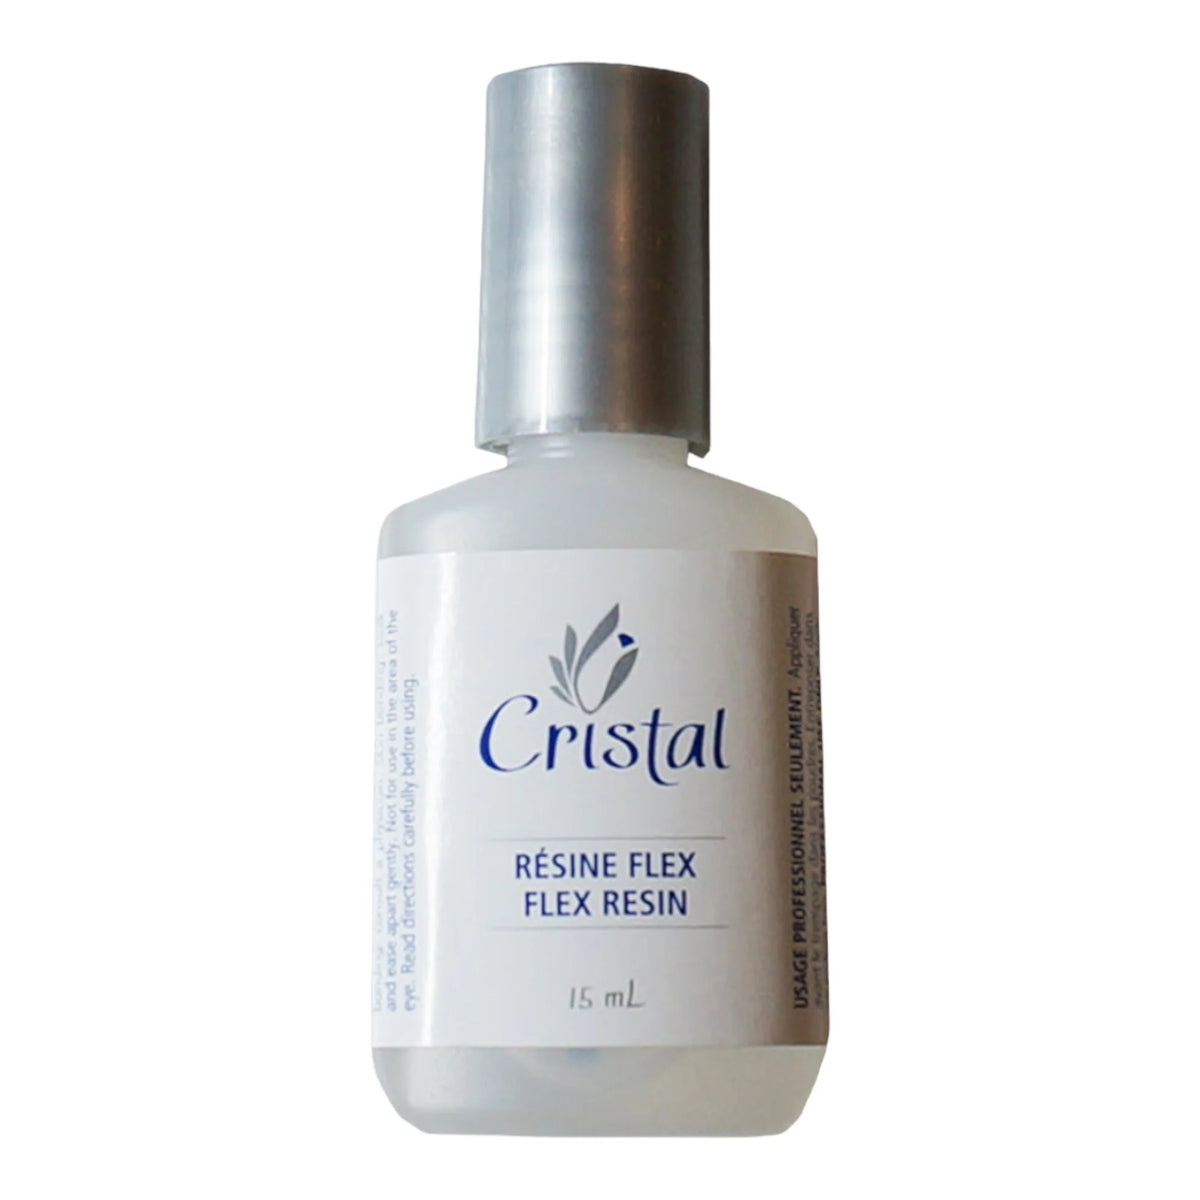 Cristal-Résine Flex